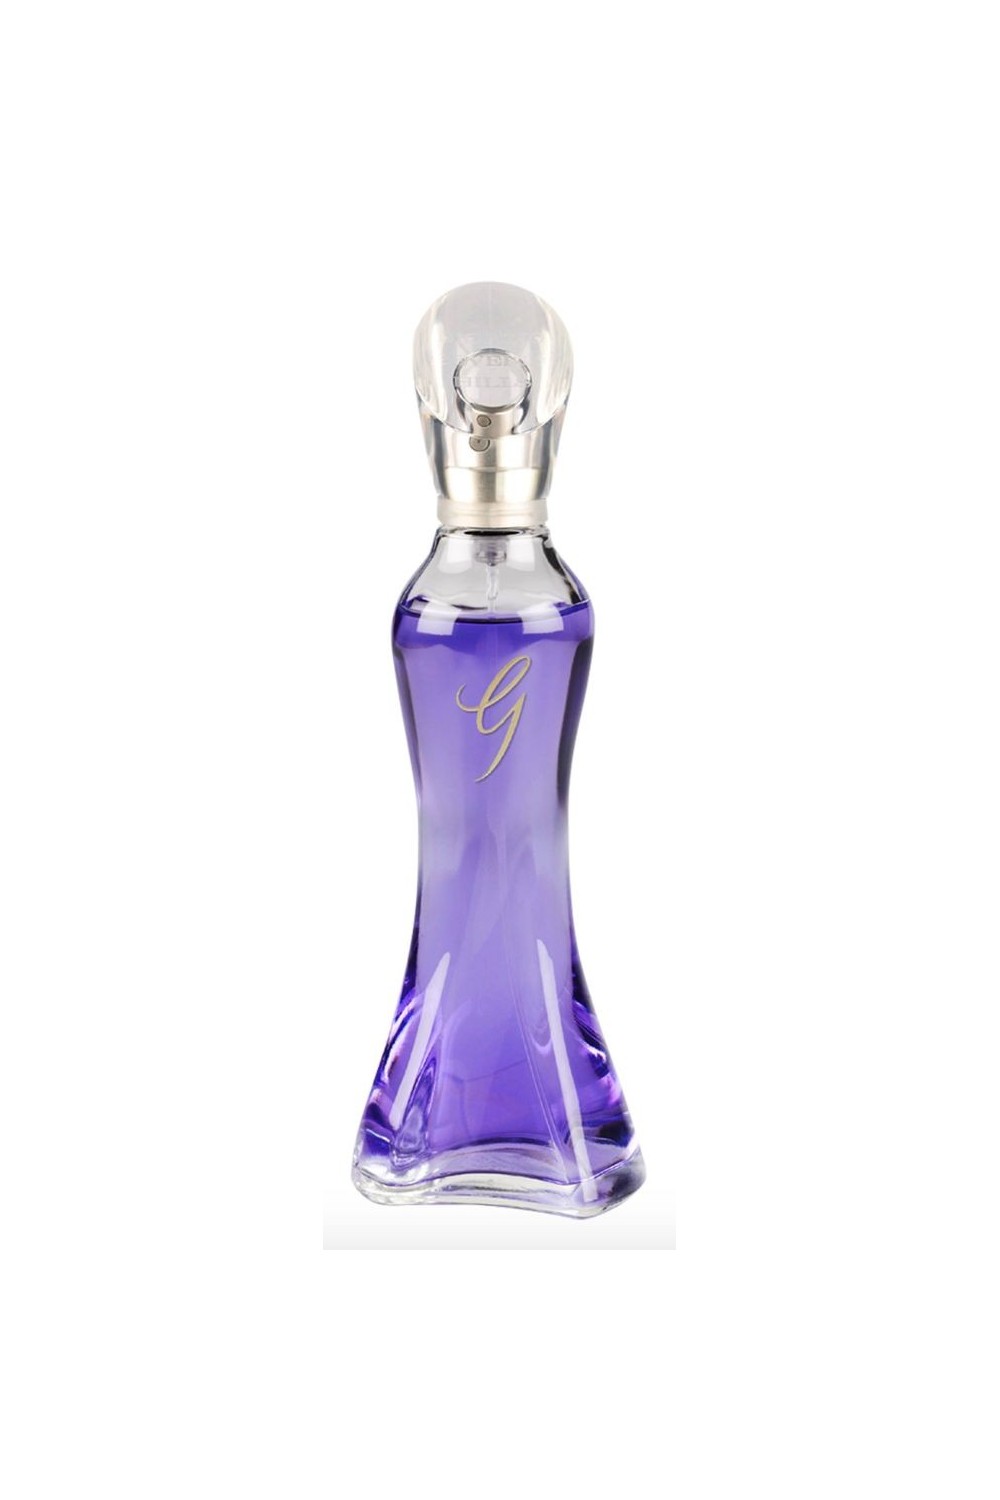 GIORGIO BEVERLY HILLS - Giorgo Beverly Hills G Eau De Perfume Spray 30ml